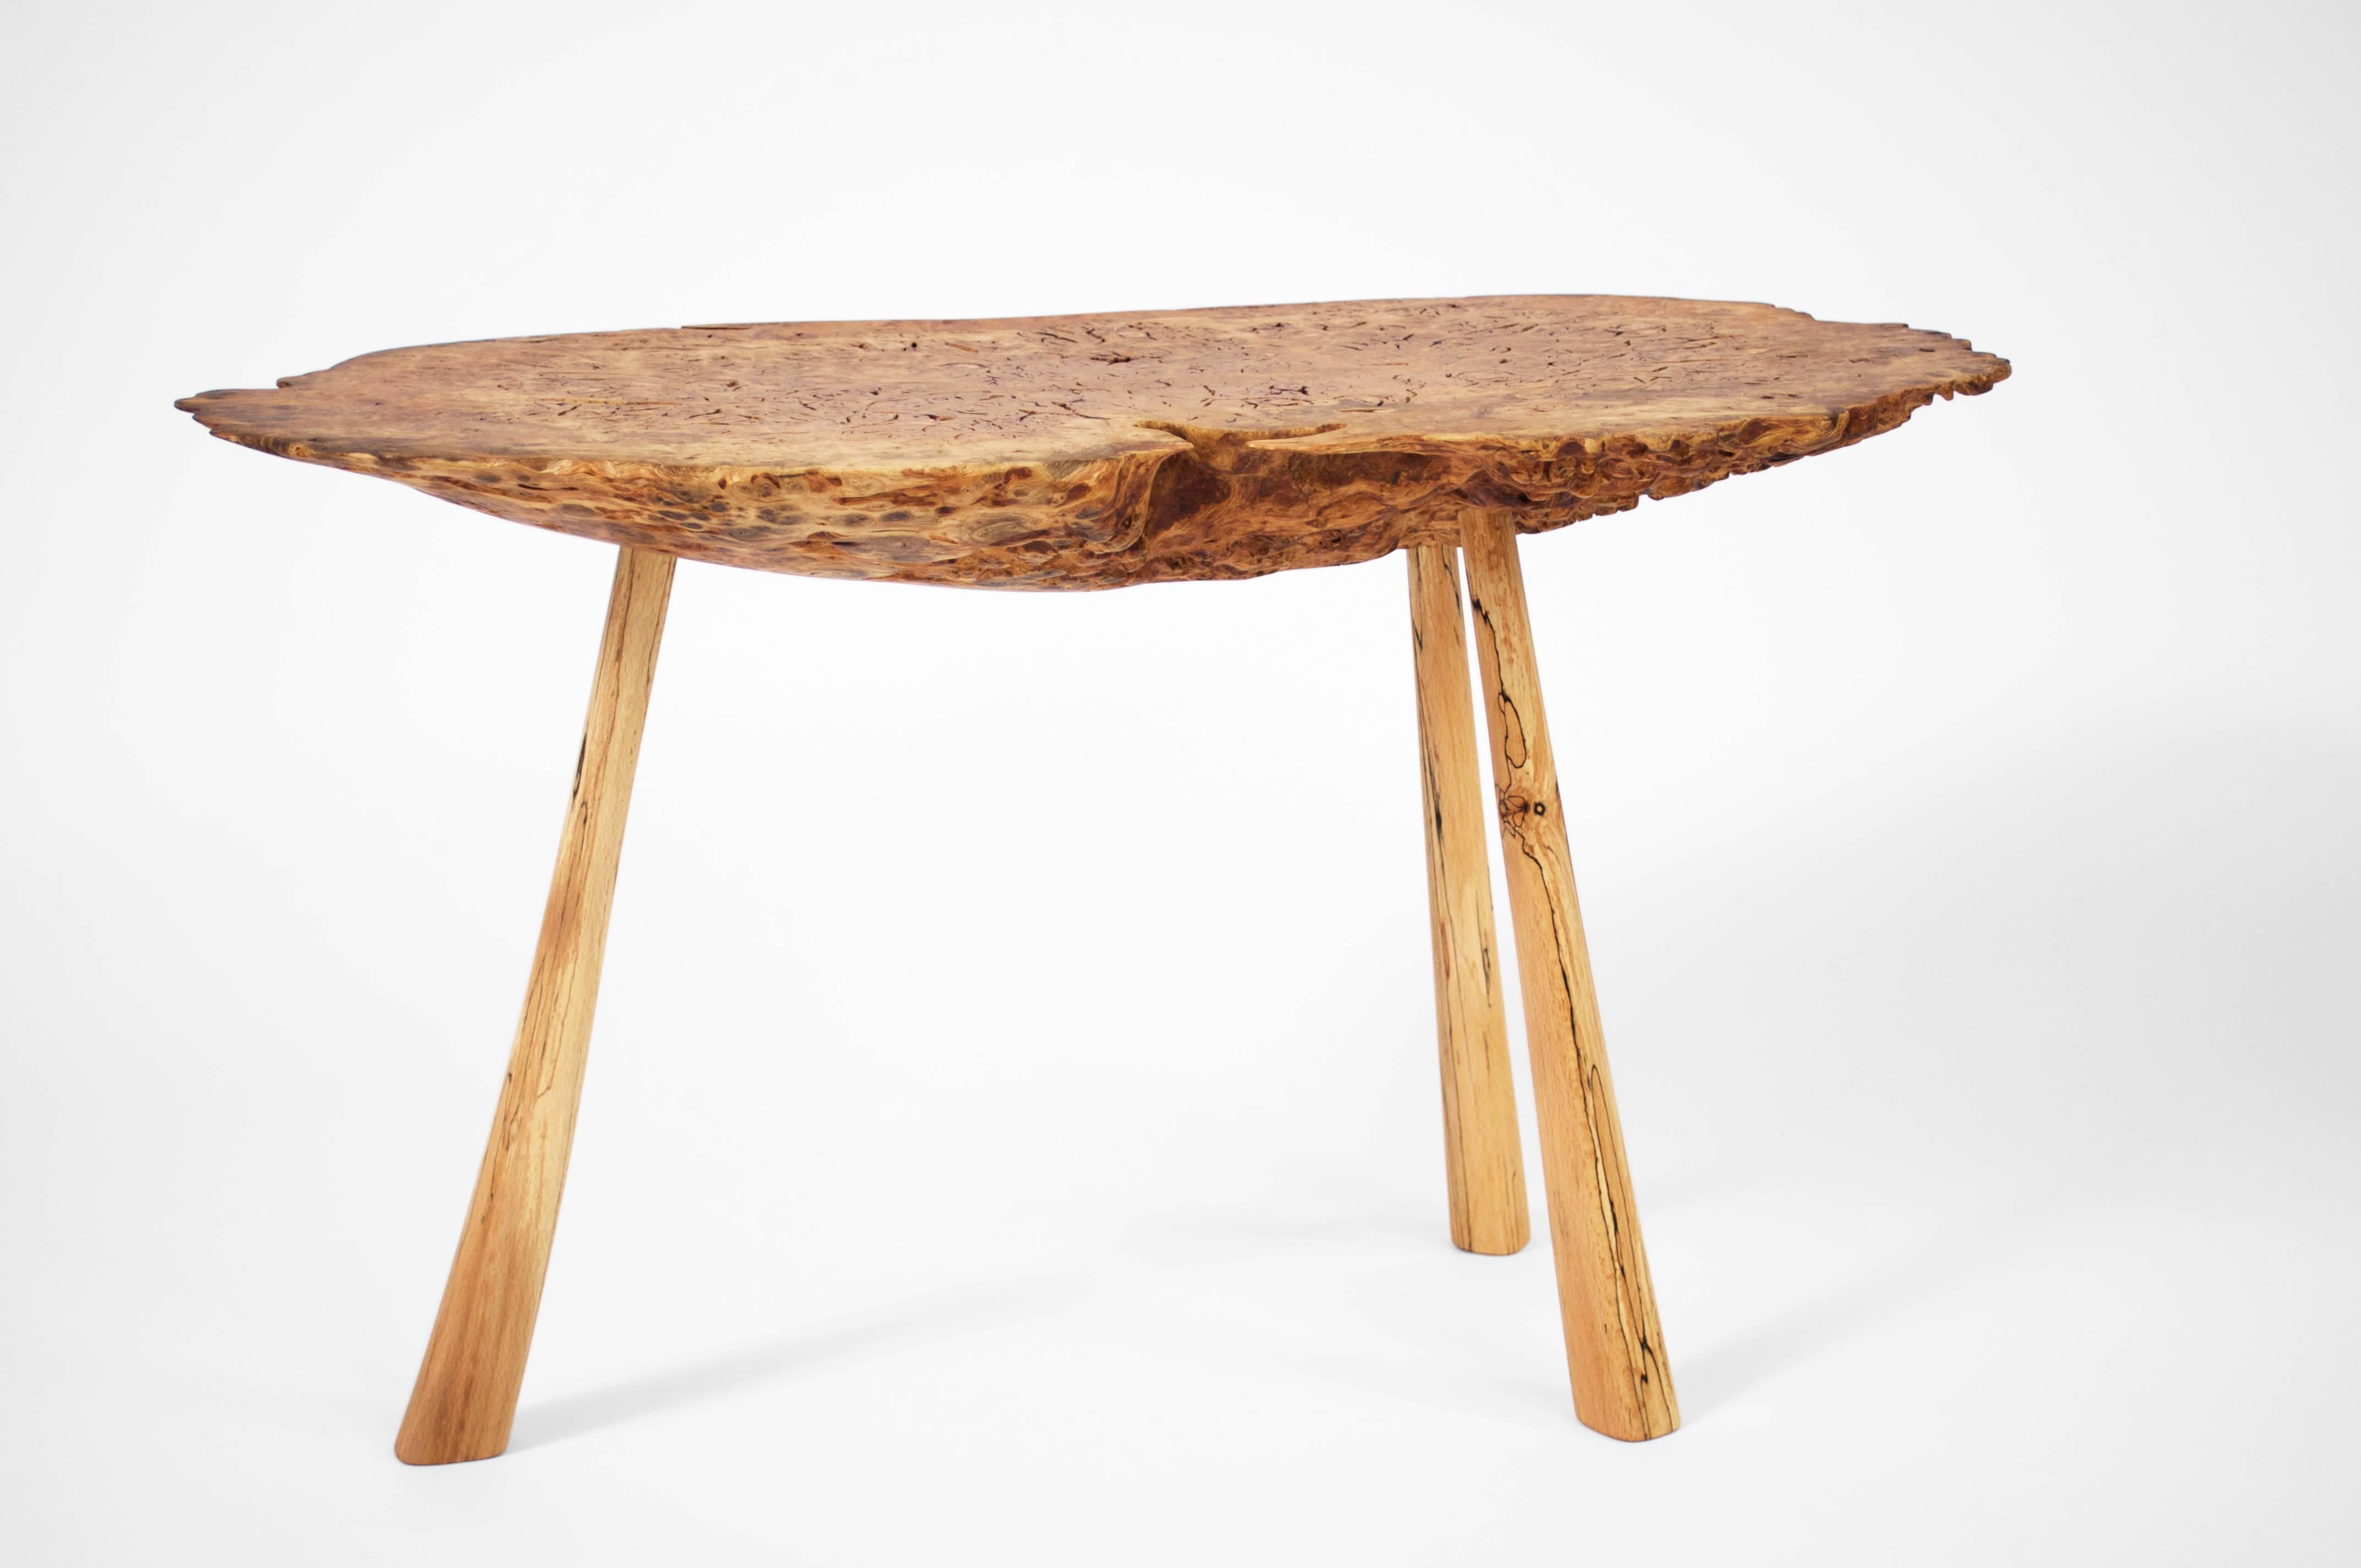 German Unique Old Oak Table by Jörg Pietschmann